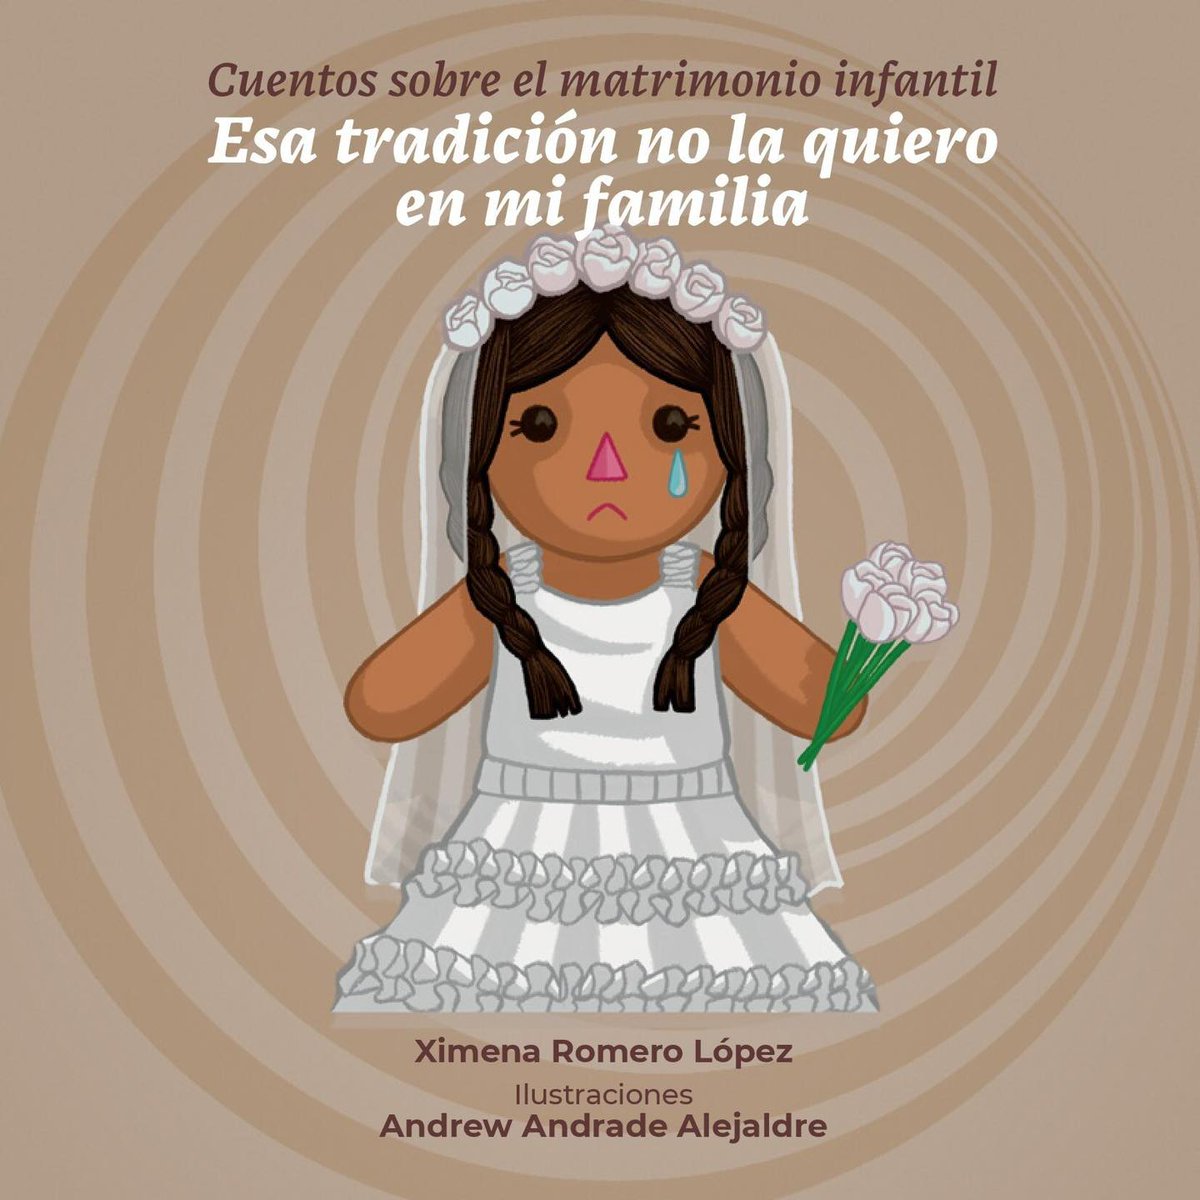 #Libro 📙 Cuentos sobre el matrimonio infantil 'Esa tradición no la quiero en mi familia'.  #INPI

Lee + 👉 bit.ly/3HTT6X7

#NuestraCulturaNuestraIdentidad #Inclusión #MujeresAfromexicanas #MujeresIndígenas #VocesDeNuestrosPueblos